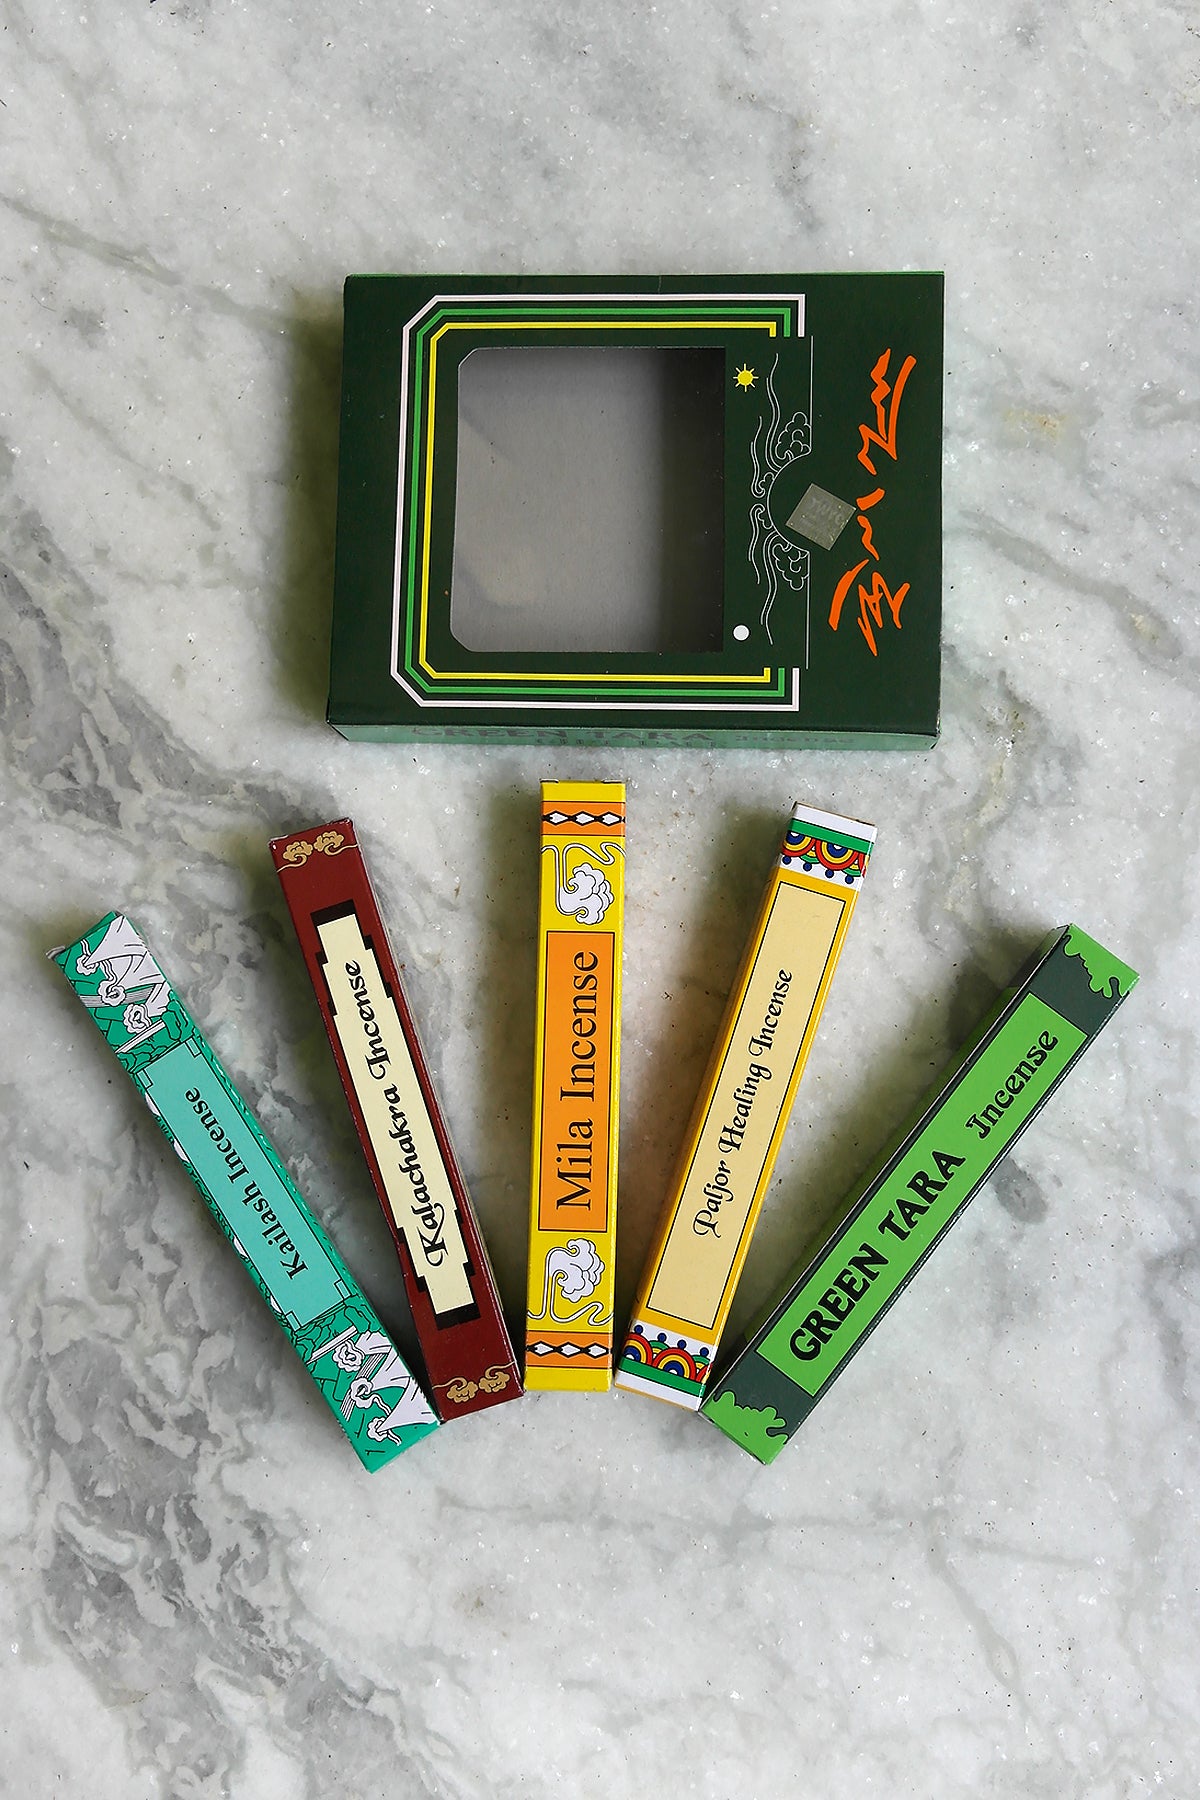 Green Tara Tibetan Incense Gift Pack, Set of 5 incense sticks